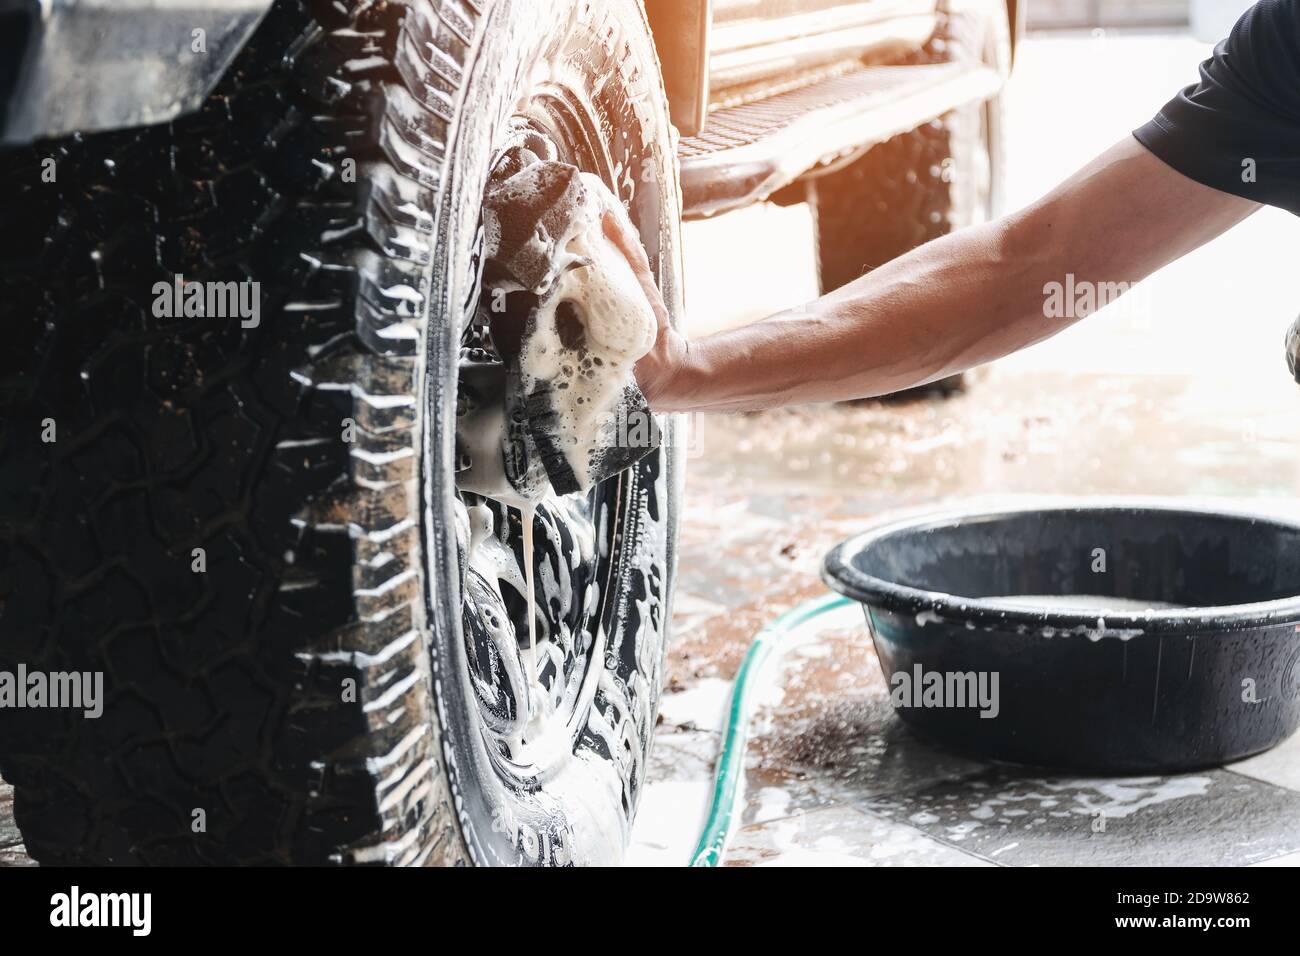 El personal de lavado de automóviles está usando una esponja humedecida con agua y jabón para limpiar las ruedas del auto. Foto de stock